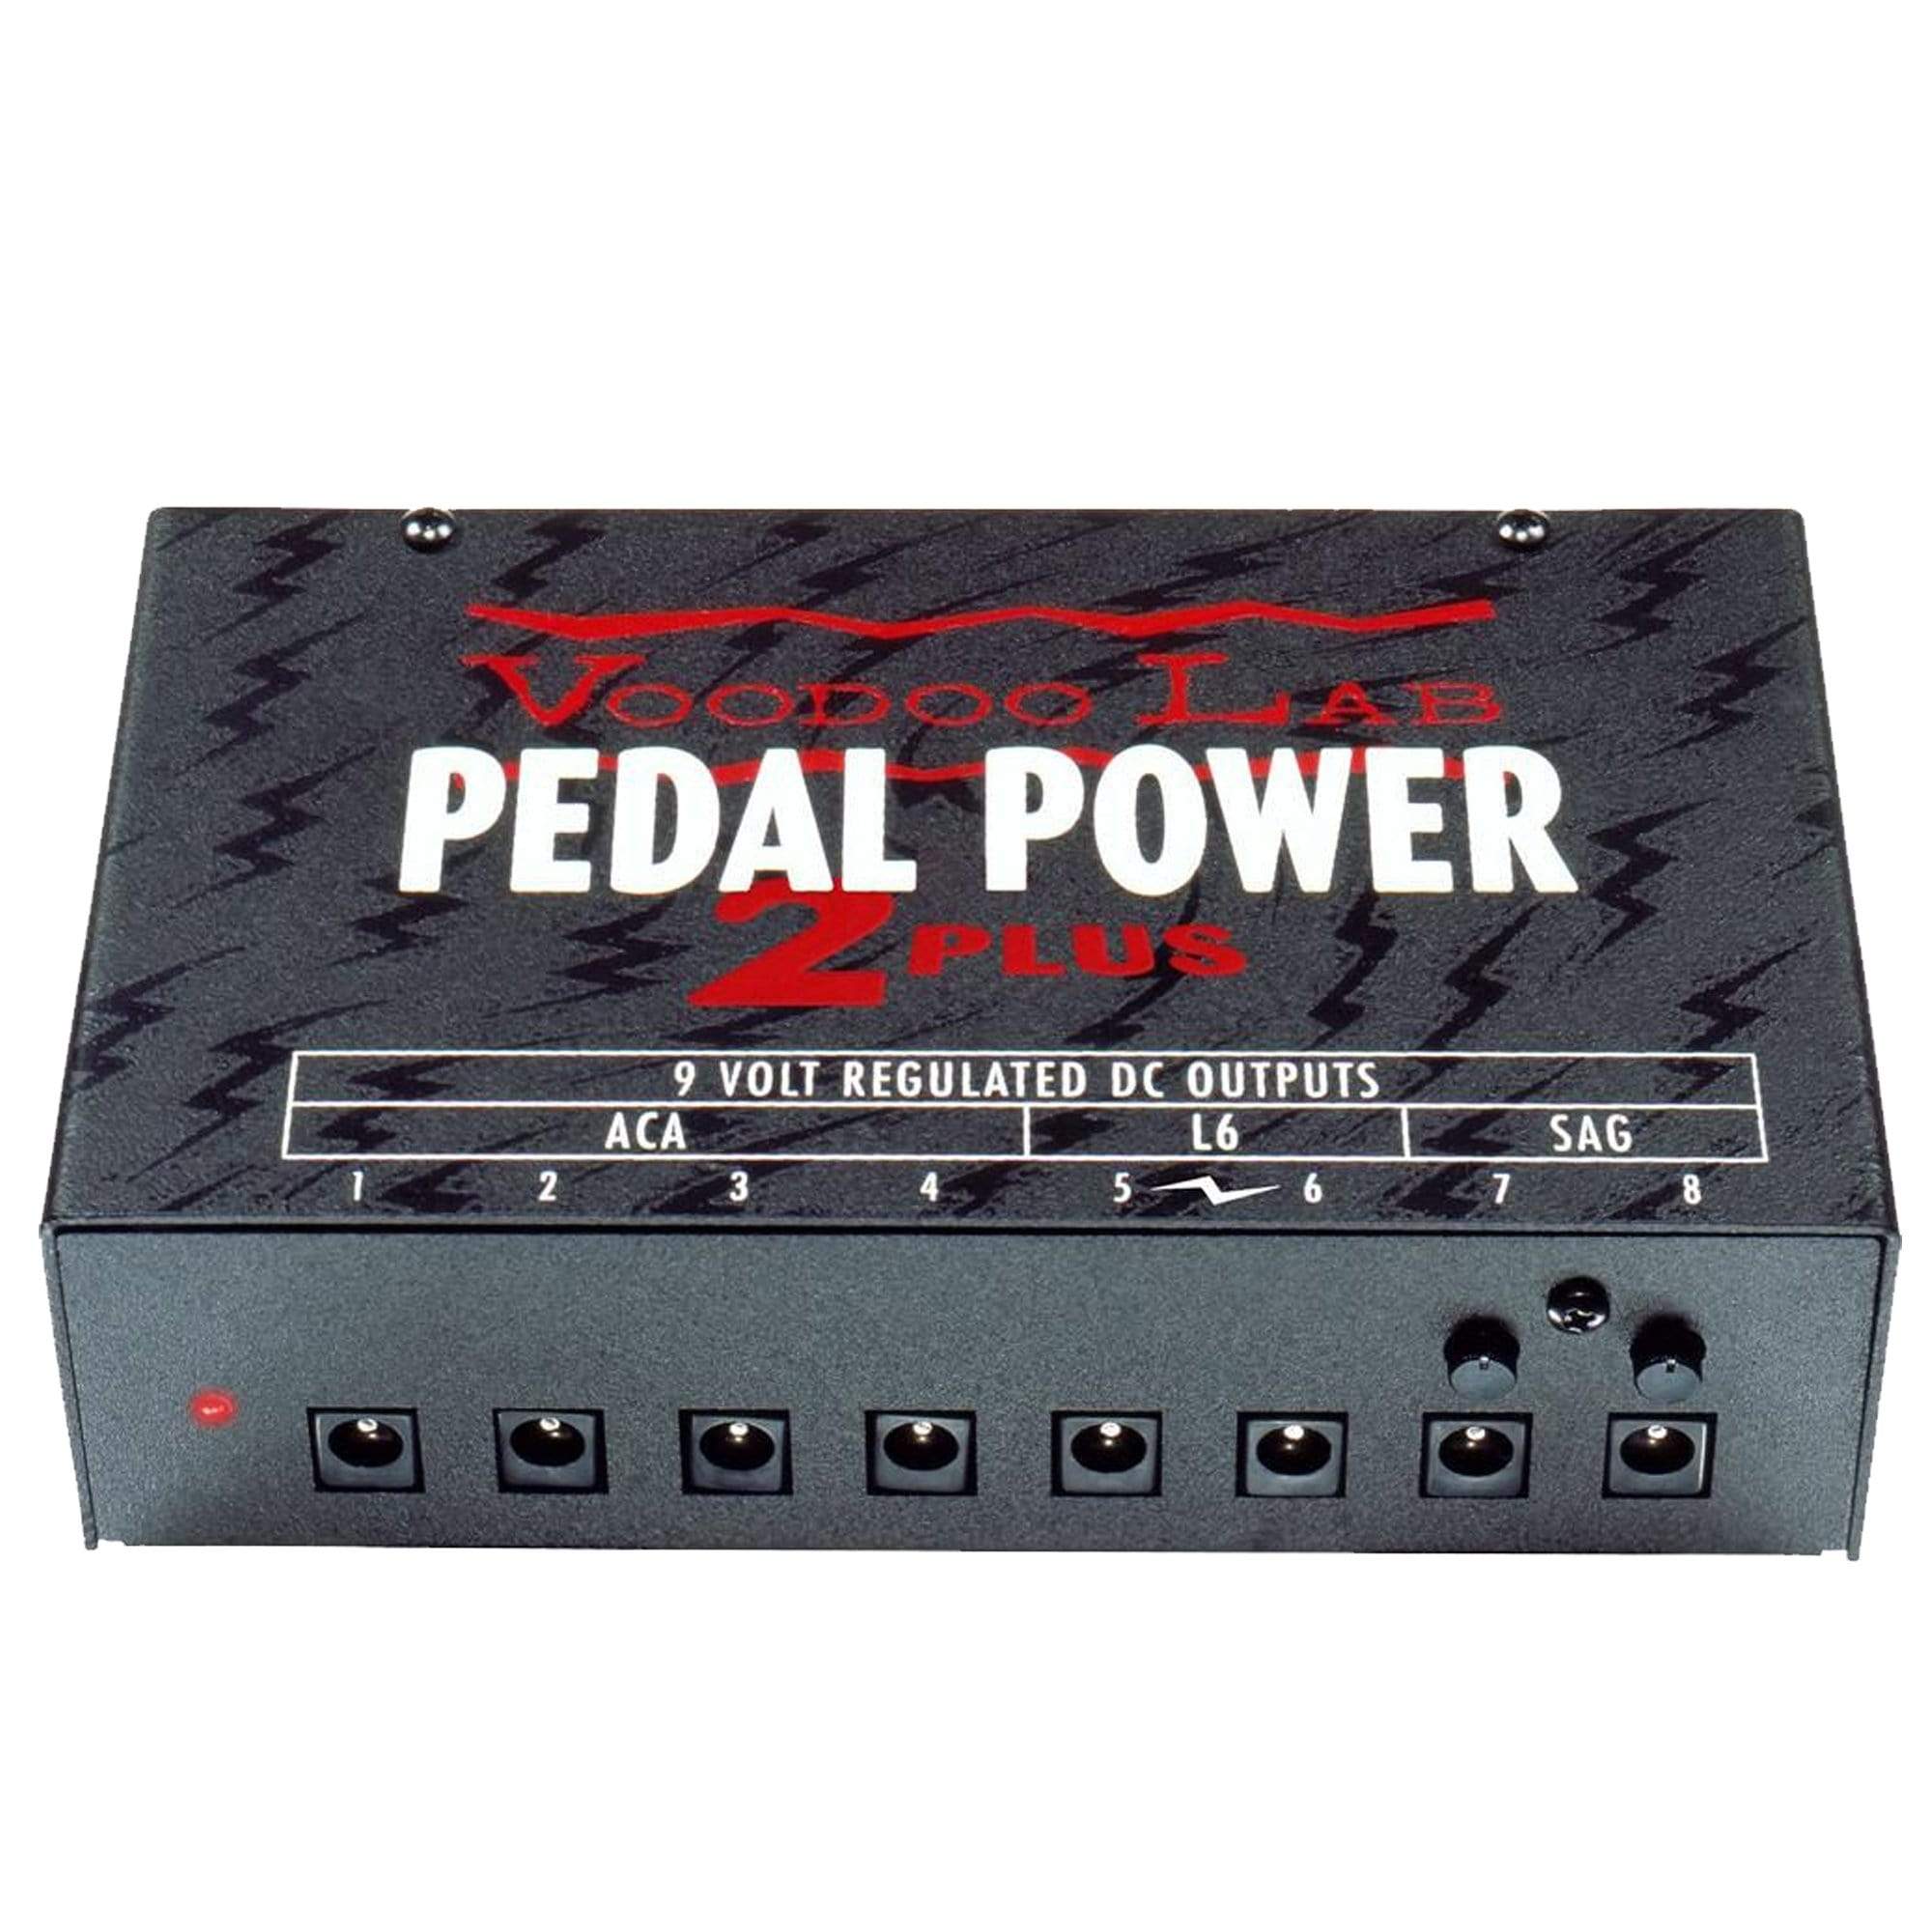 Pedaltrain Classic JR Pedalboard 18x12.5 w/Tour Case Bundle w/ Voodoo Lab  Pedal Power 2 PLUS Power Supply